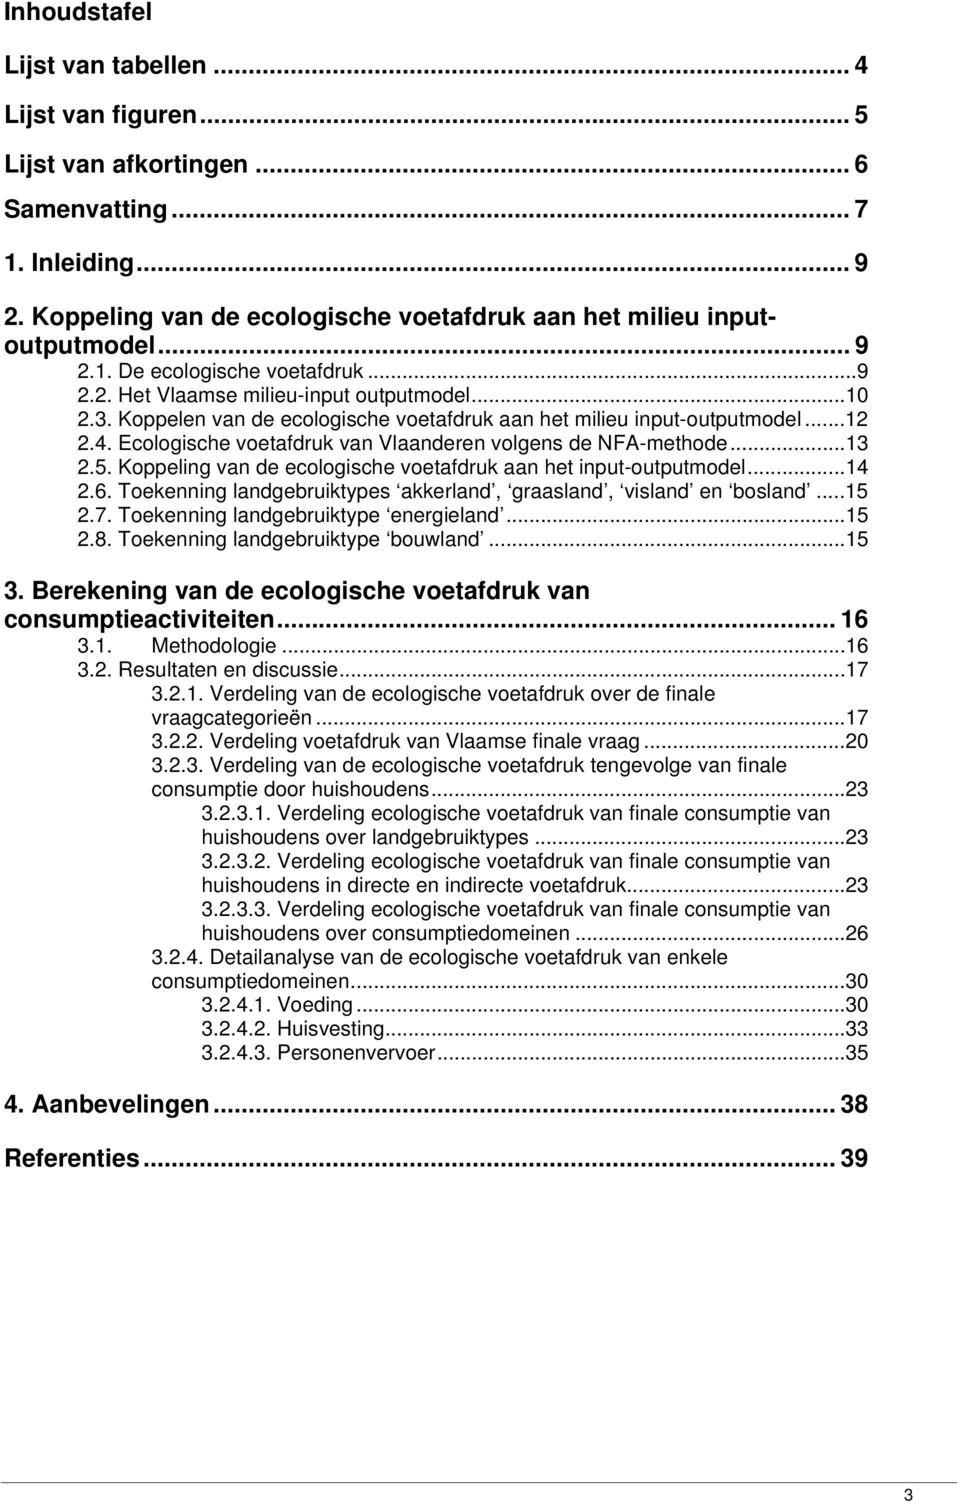 Ecologische voetafdruk van Vlaanderen volgens de NFA-methode...13 2.5. Koppeling van de ecologische voetafdruk aan het input-outputmodel...14 2.6.